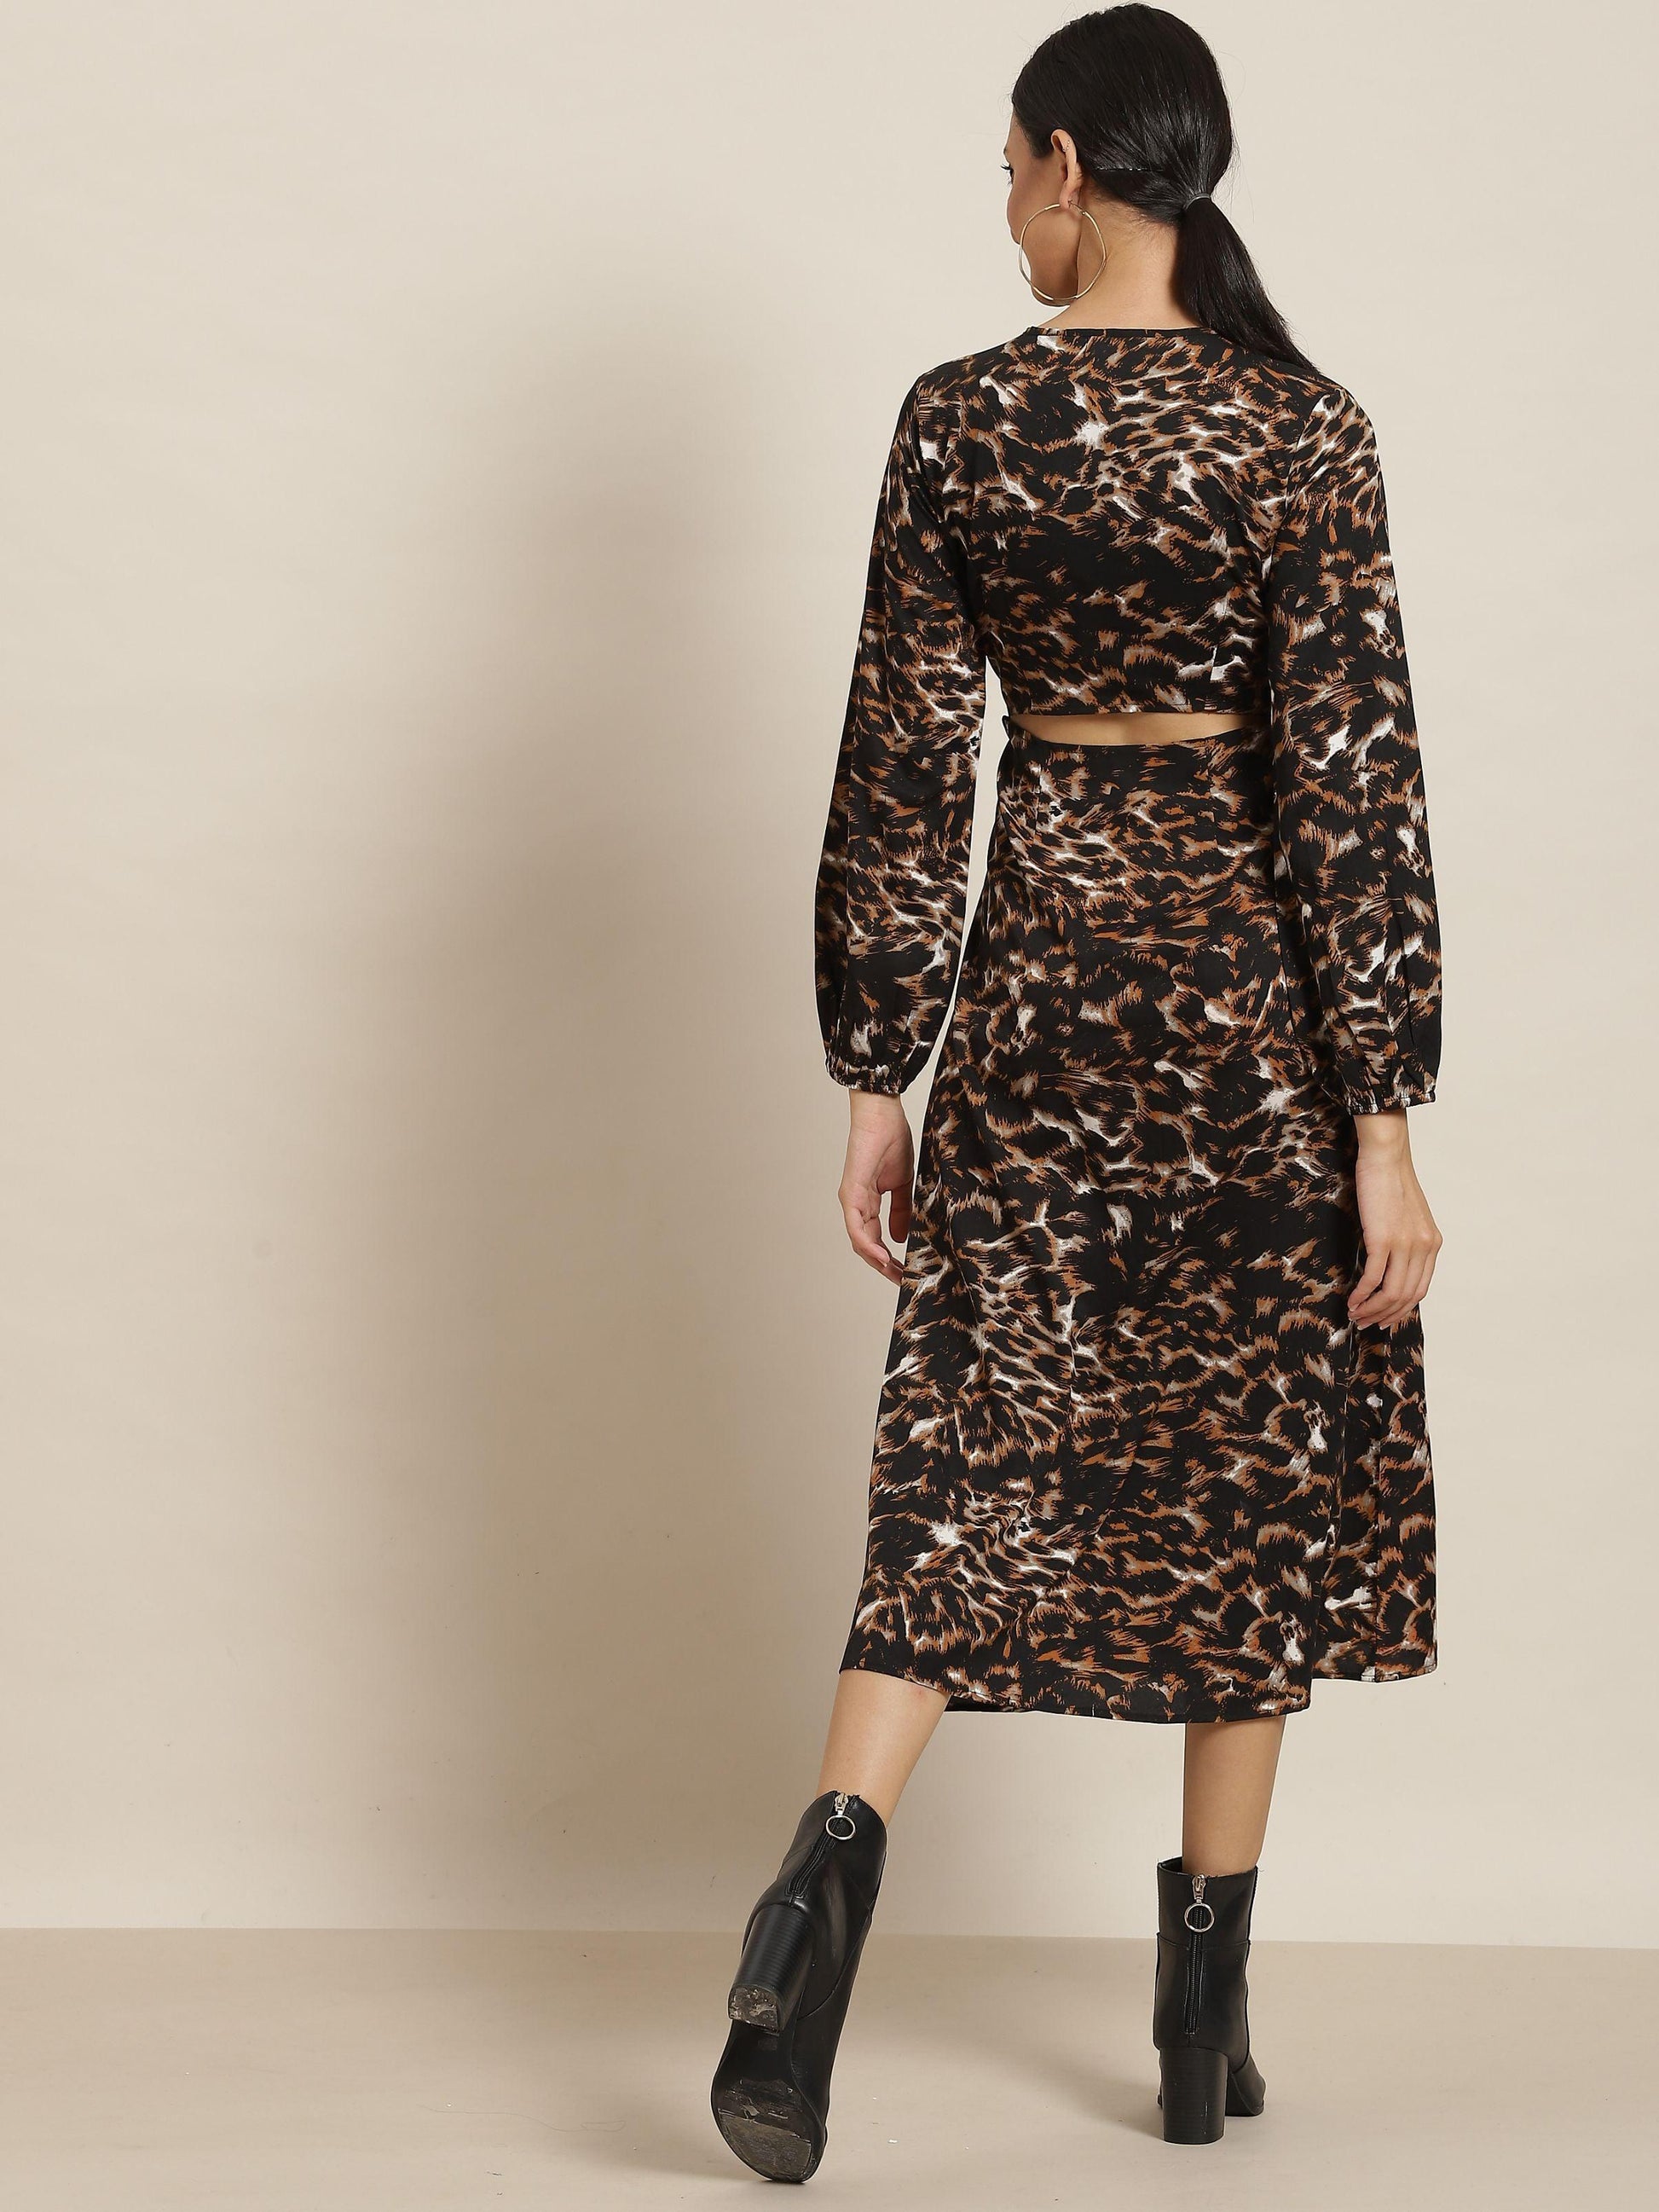 Qurvii Black And Brown Tiger Print Dress - Qurvii India